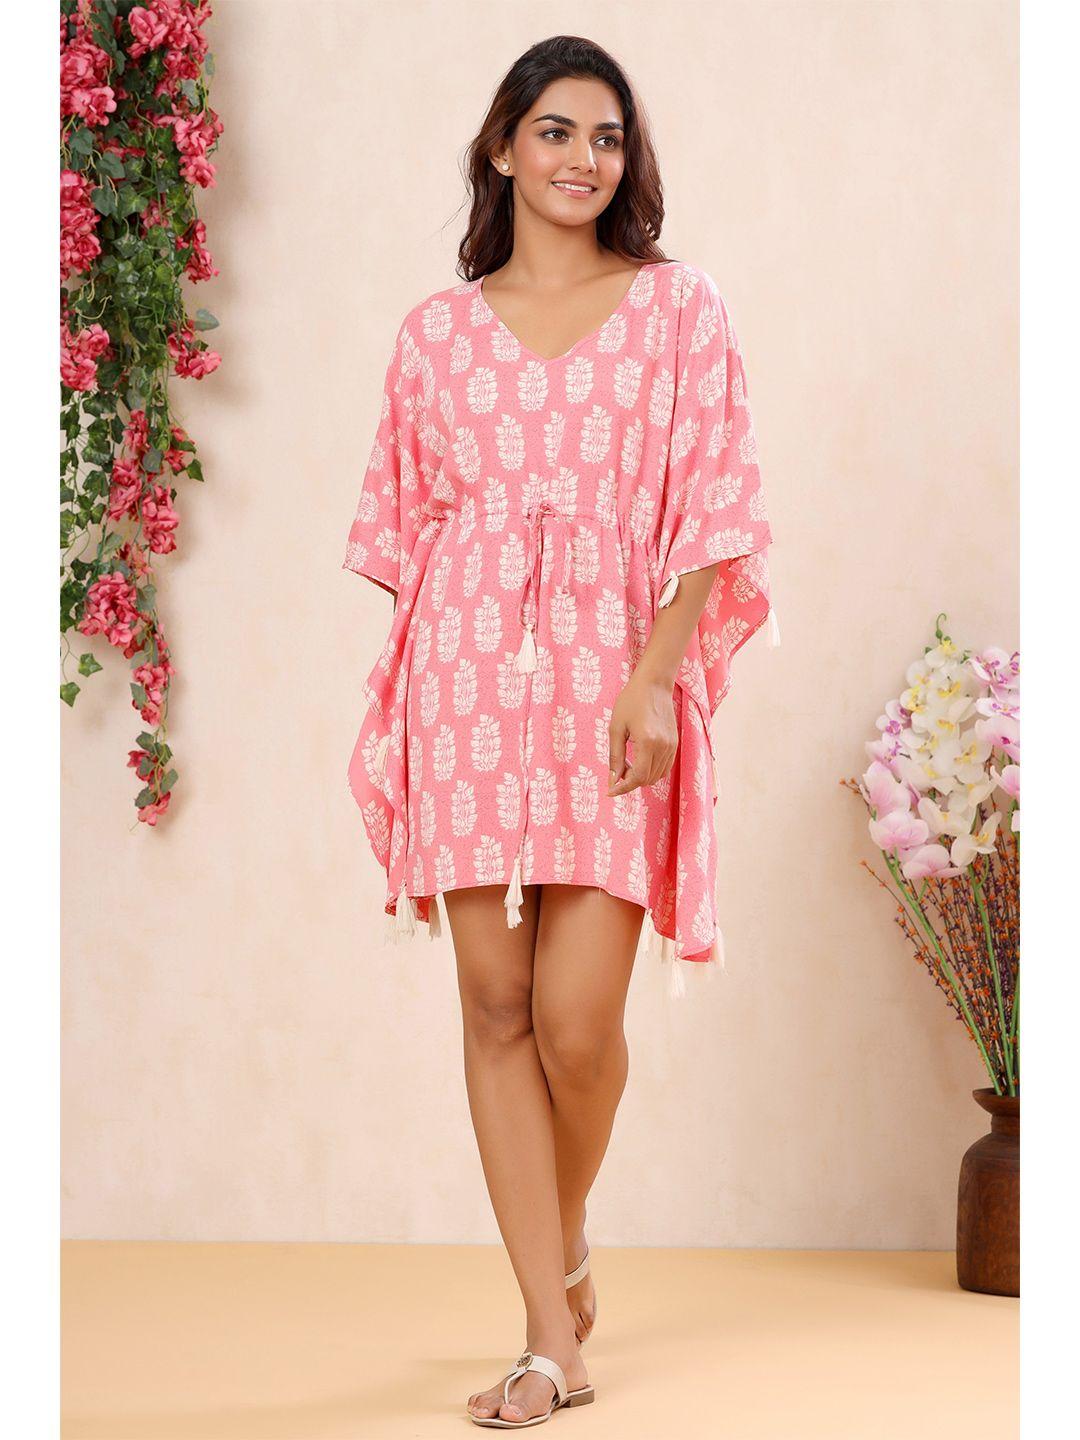 mirari-women-pink-printed-pure-cotton-nightdress-mi01-kft-0337_xs-pink